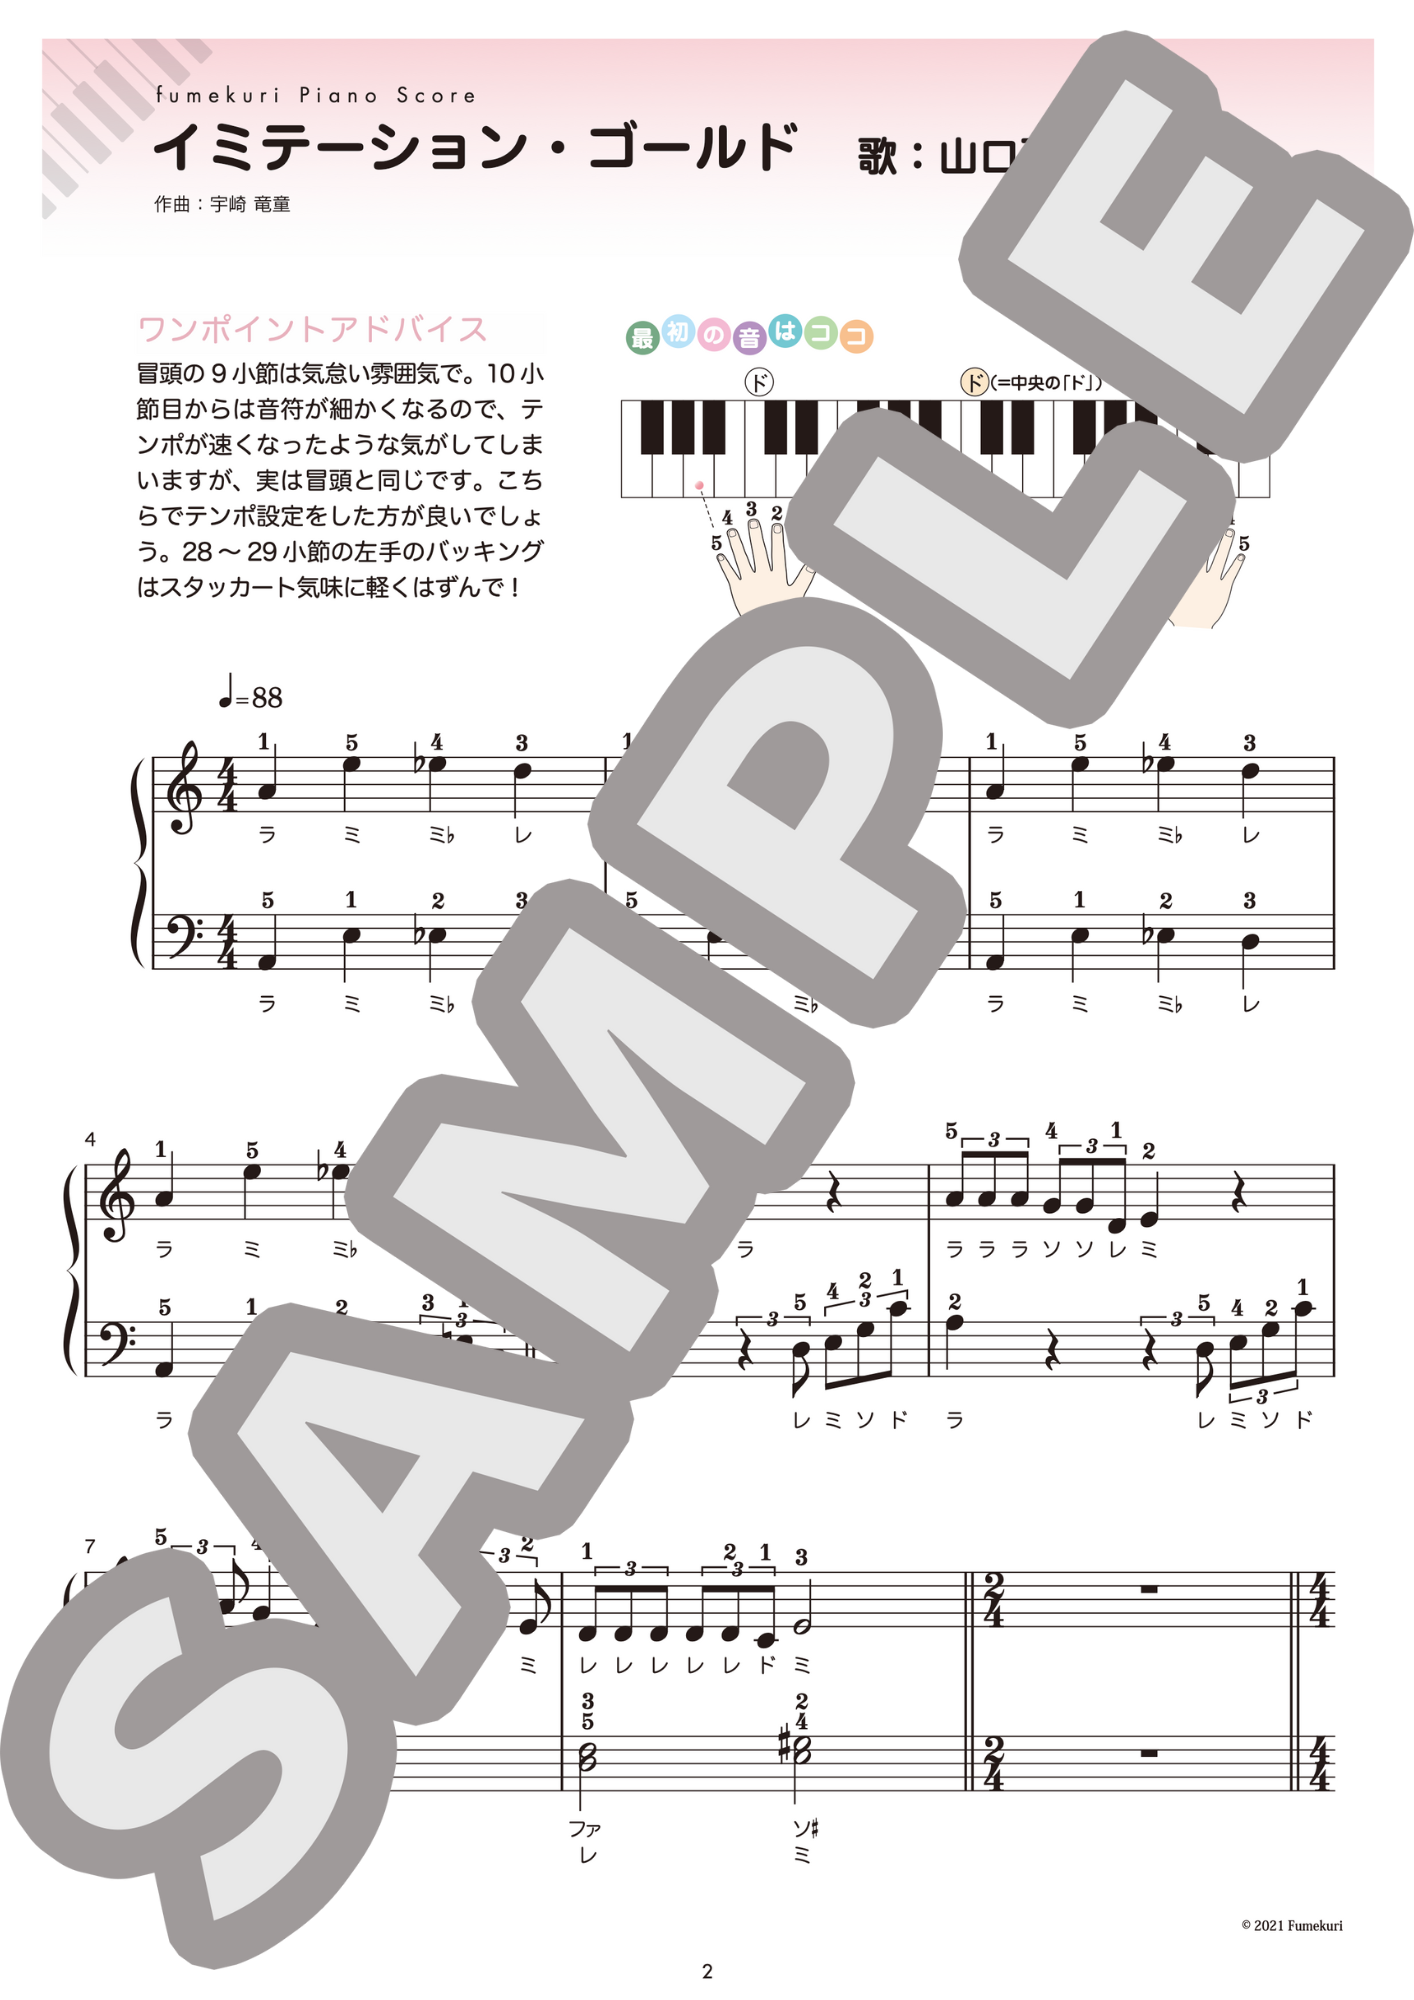 【ピアノ・ソロ初級】阿木燿子 名曲5選